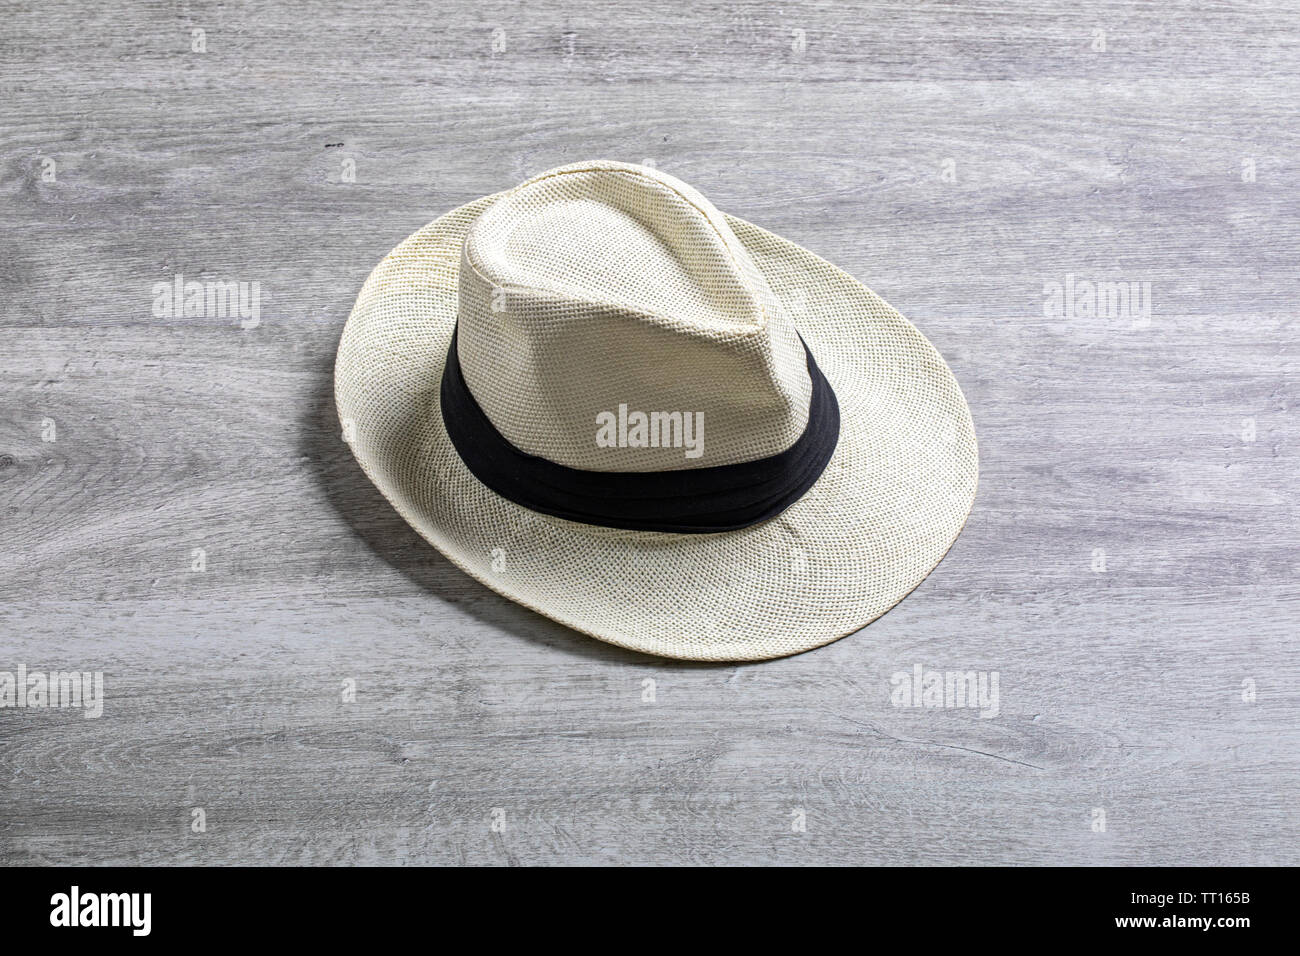 A Panama hat Stock Photo